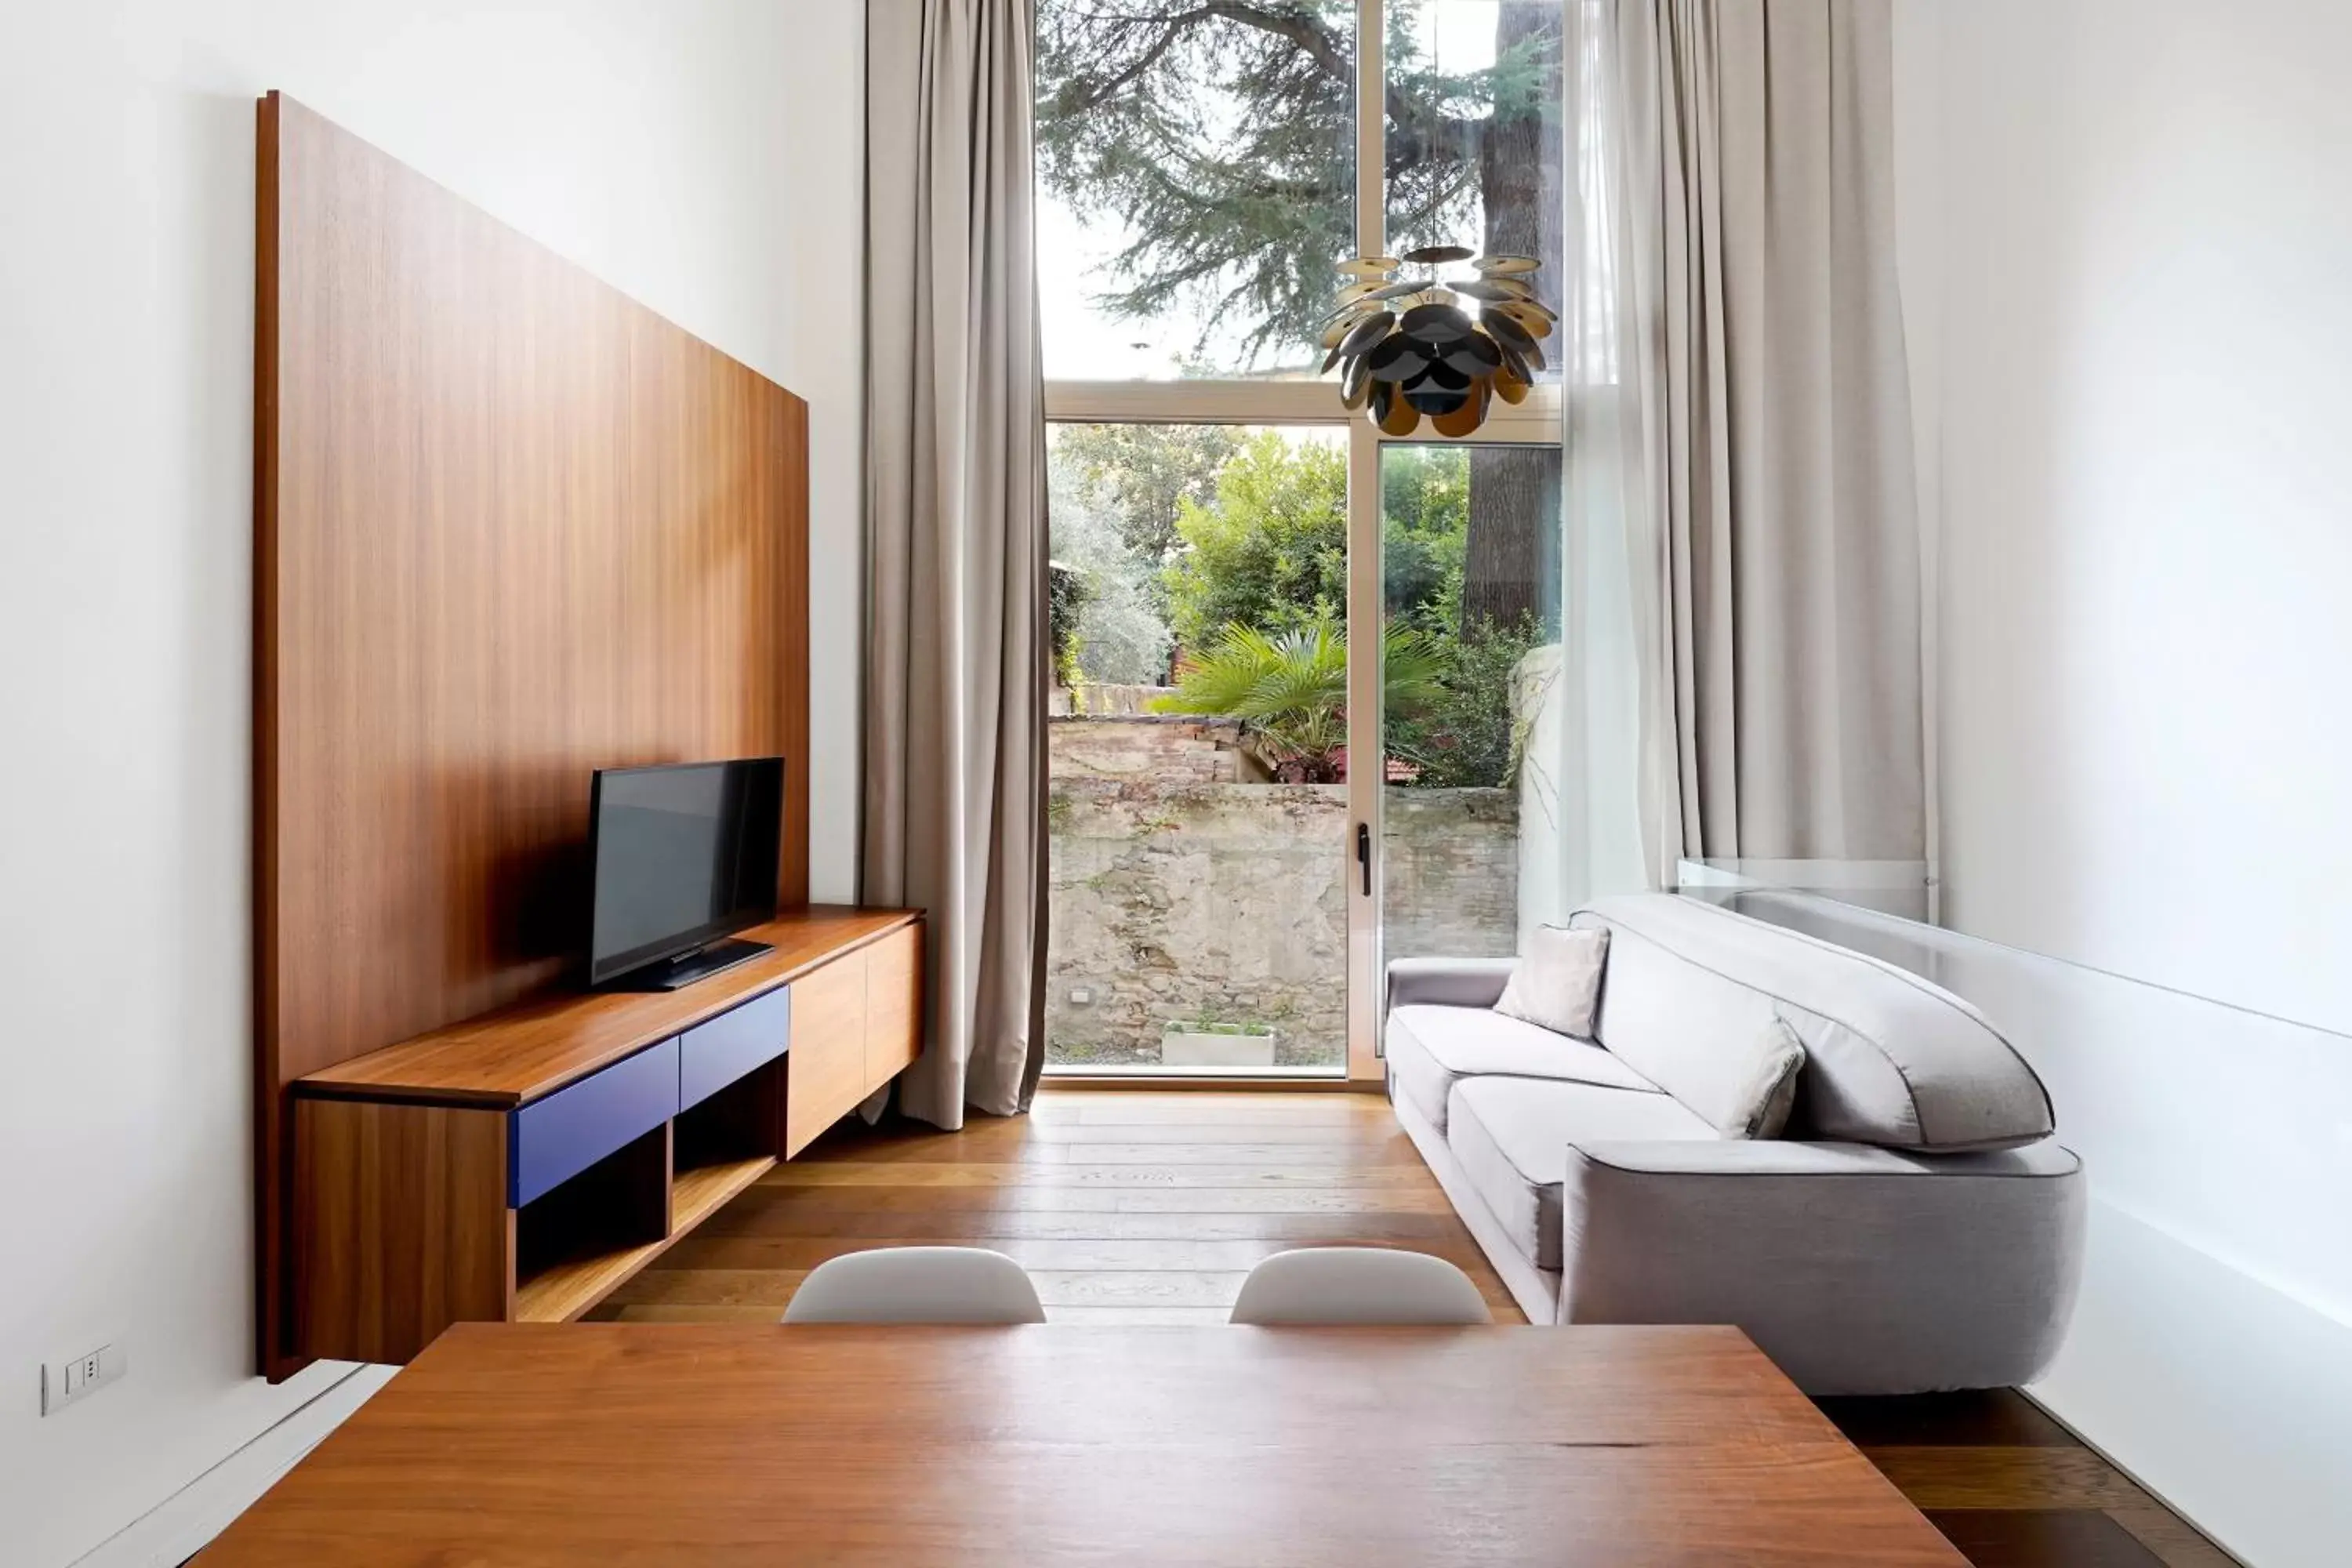 TV and multimedia, Seating Area in numa I Vita Apartments